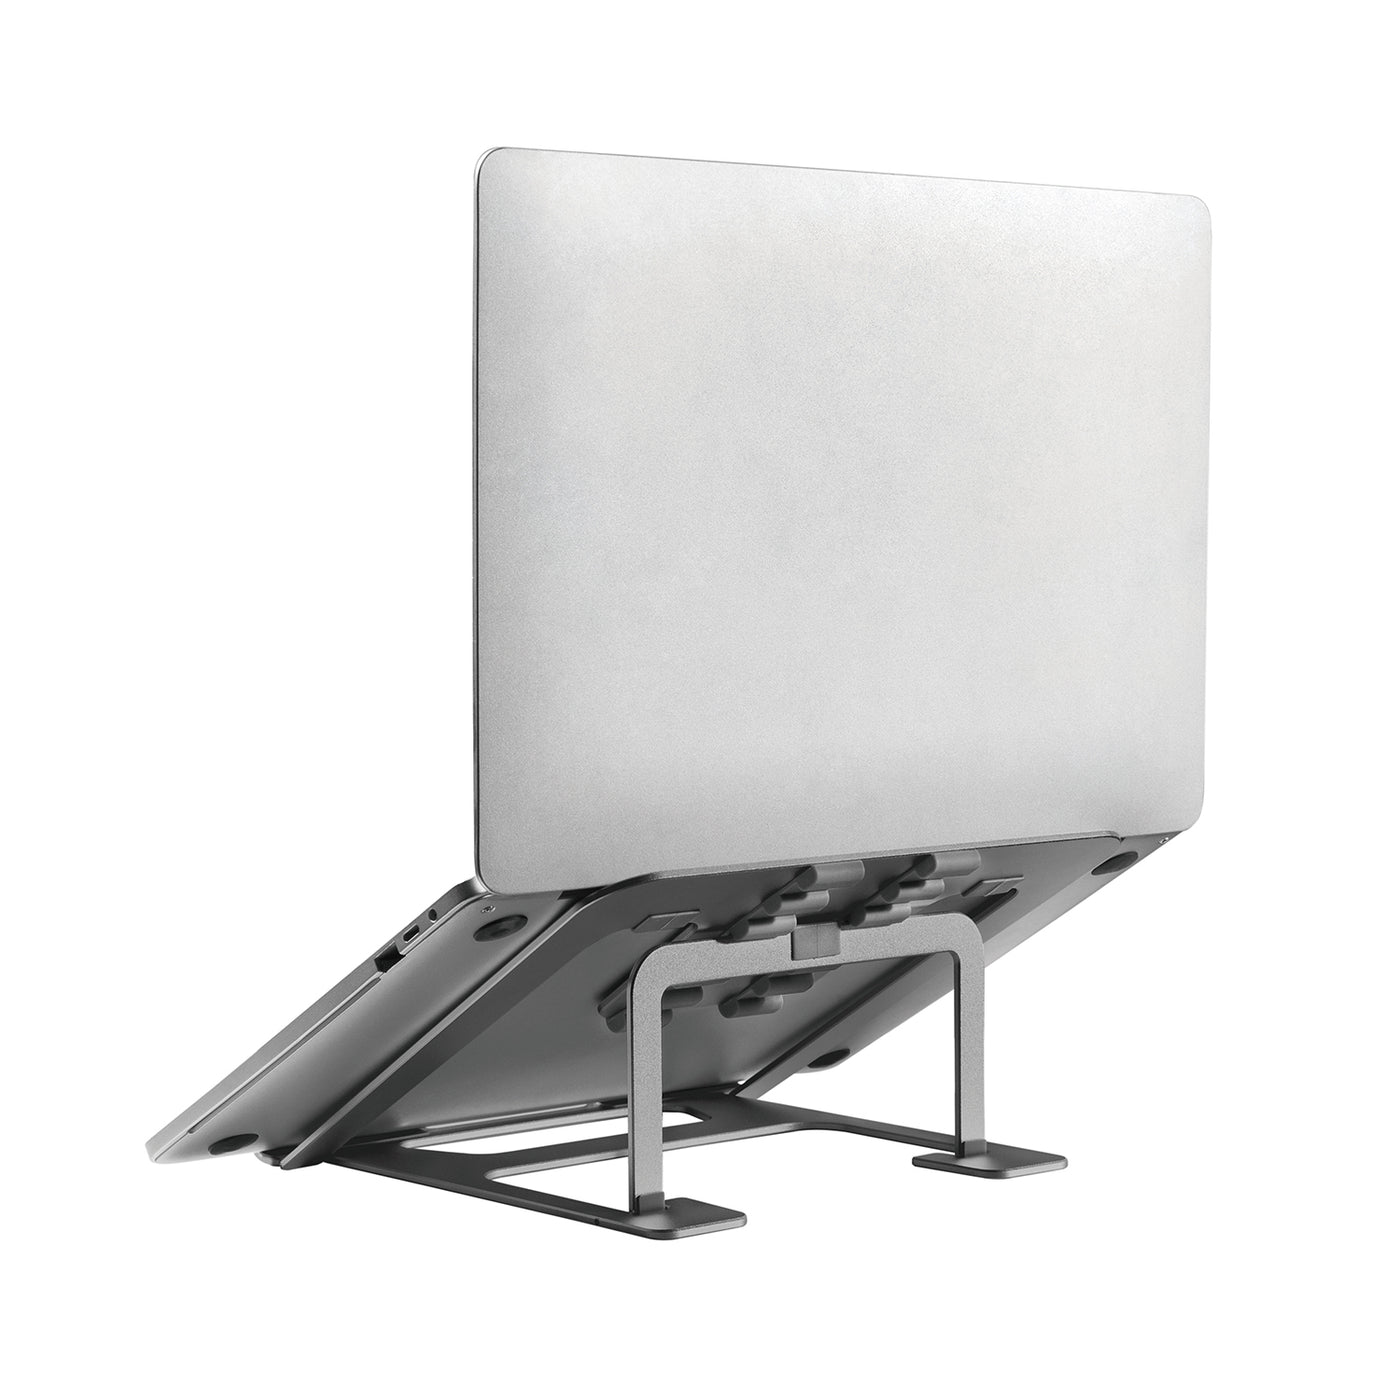 Ergo Office ER-416 G ERGOOFFICE.EU Suporte dobrável ultrafino de alumínio para laptop, cinza, adequado para laptops de 11 a 15 '', ER-416 G